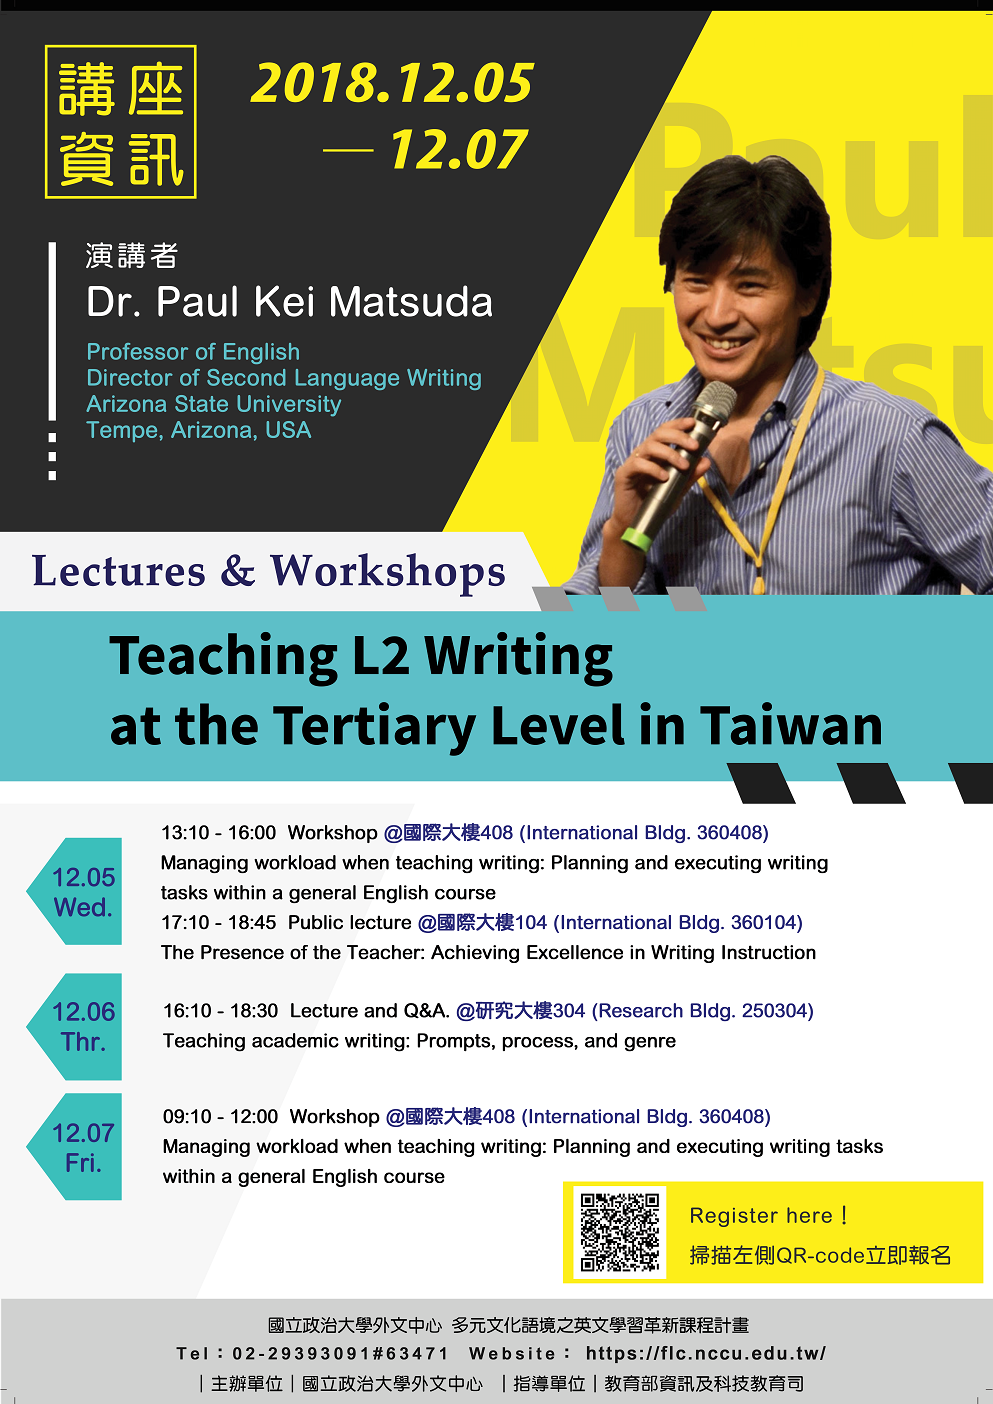 【國立政治大學】Lectures & Workshops: Teaching L2 Writing at the Tertiary Level in Taiwan (Dr. Paul Kei Matsuda系列演講與工作坊 Dec. 5-7)